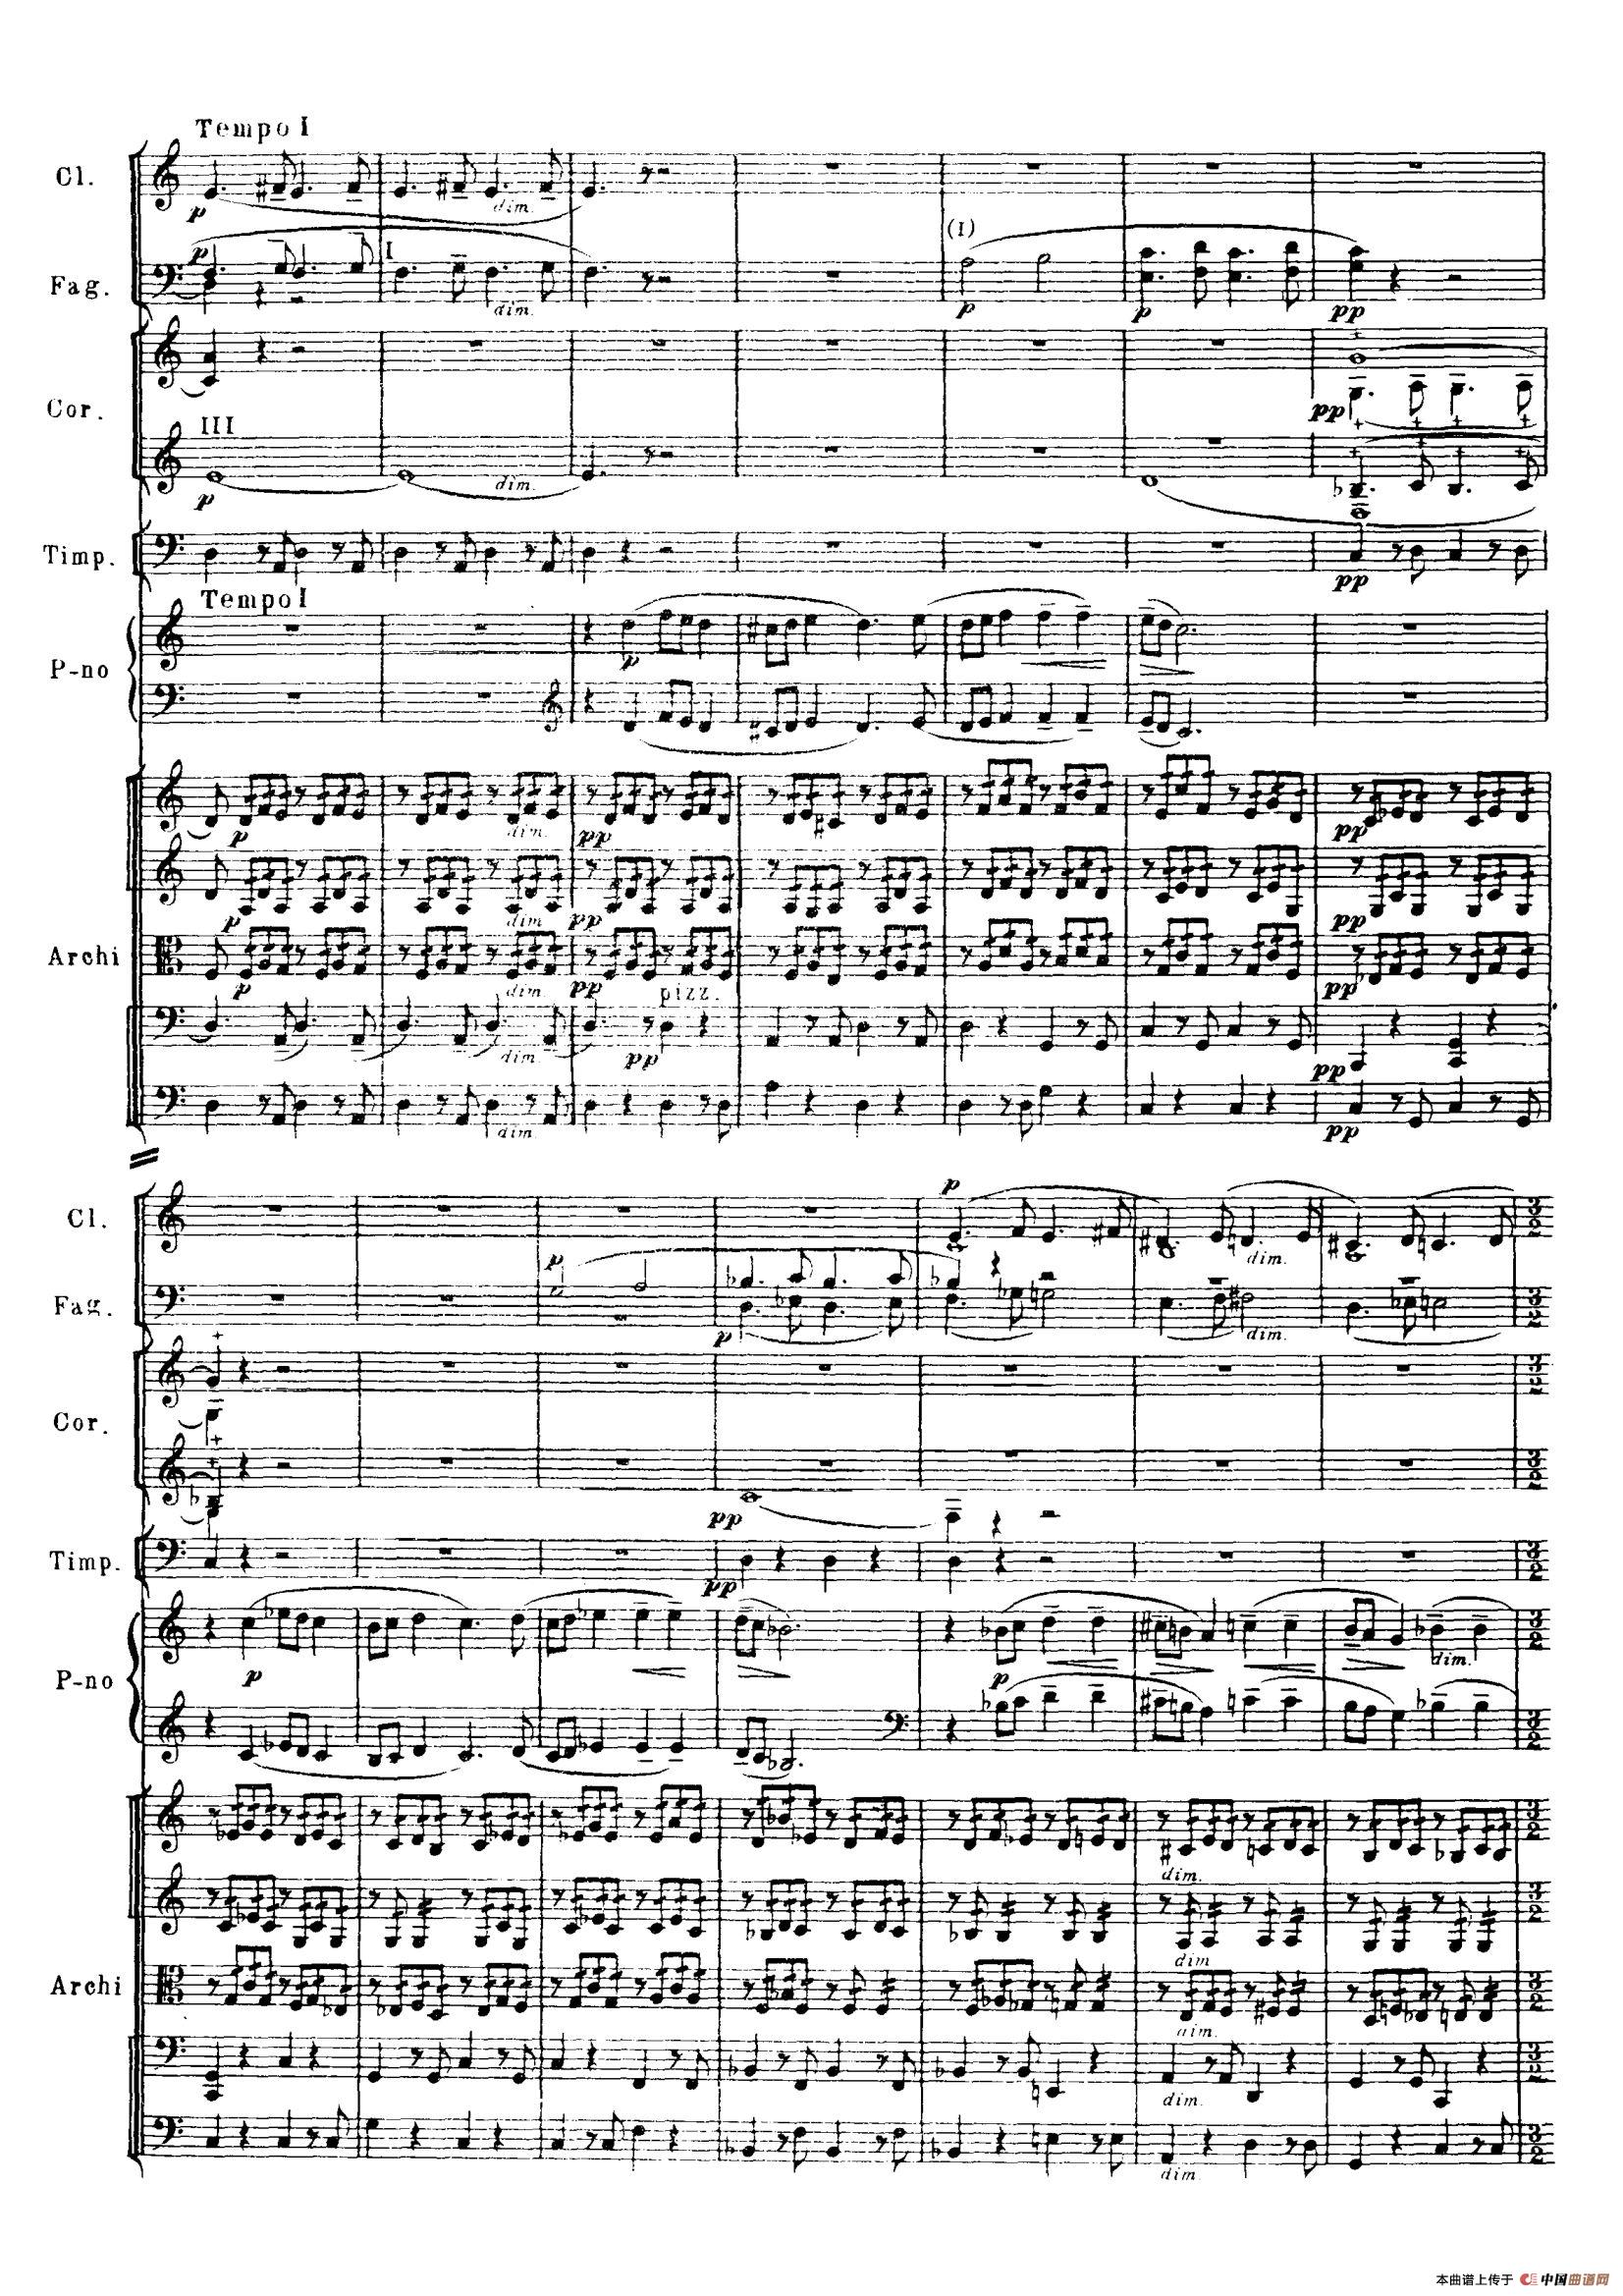 拉赫玛尼诺夫第三钢琴协奏曲总谱完整版（P1—